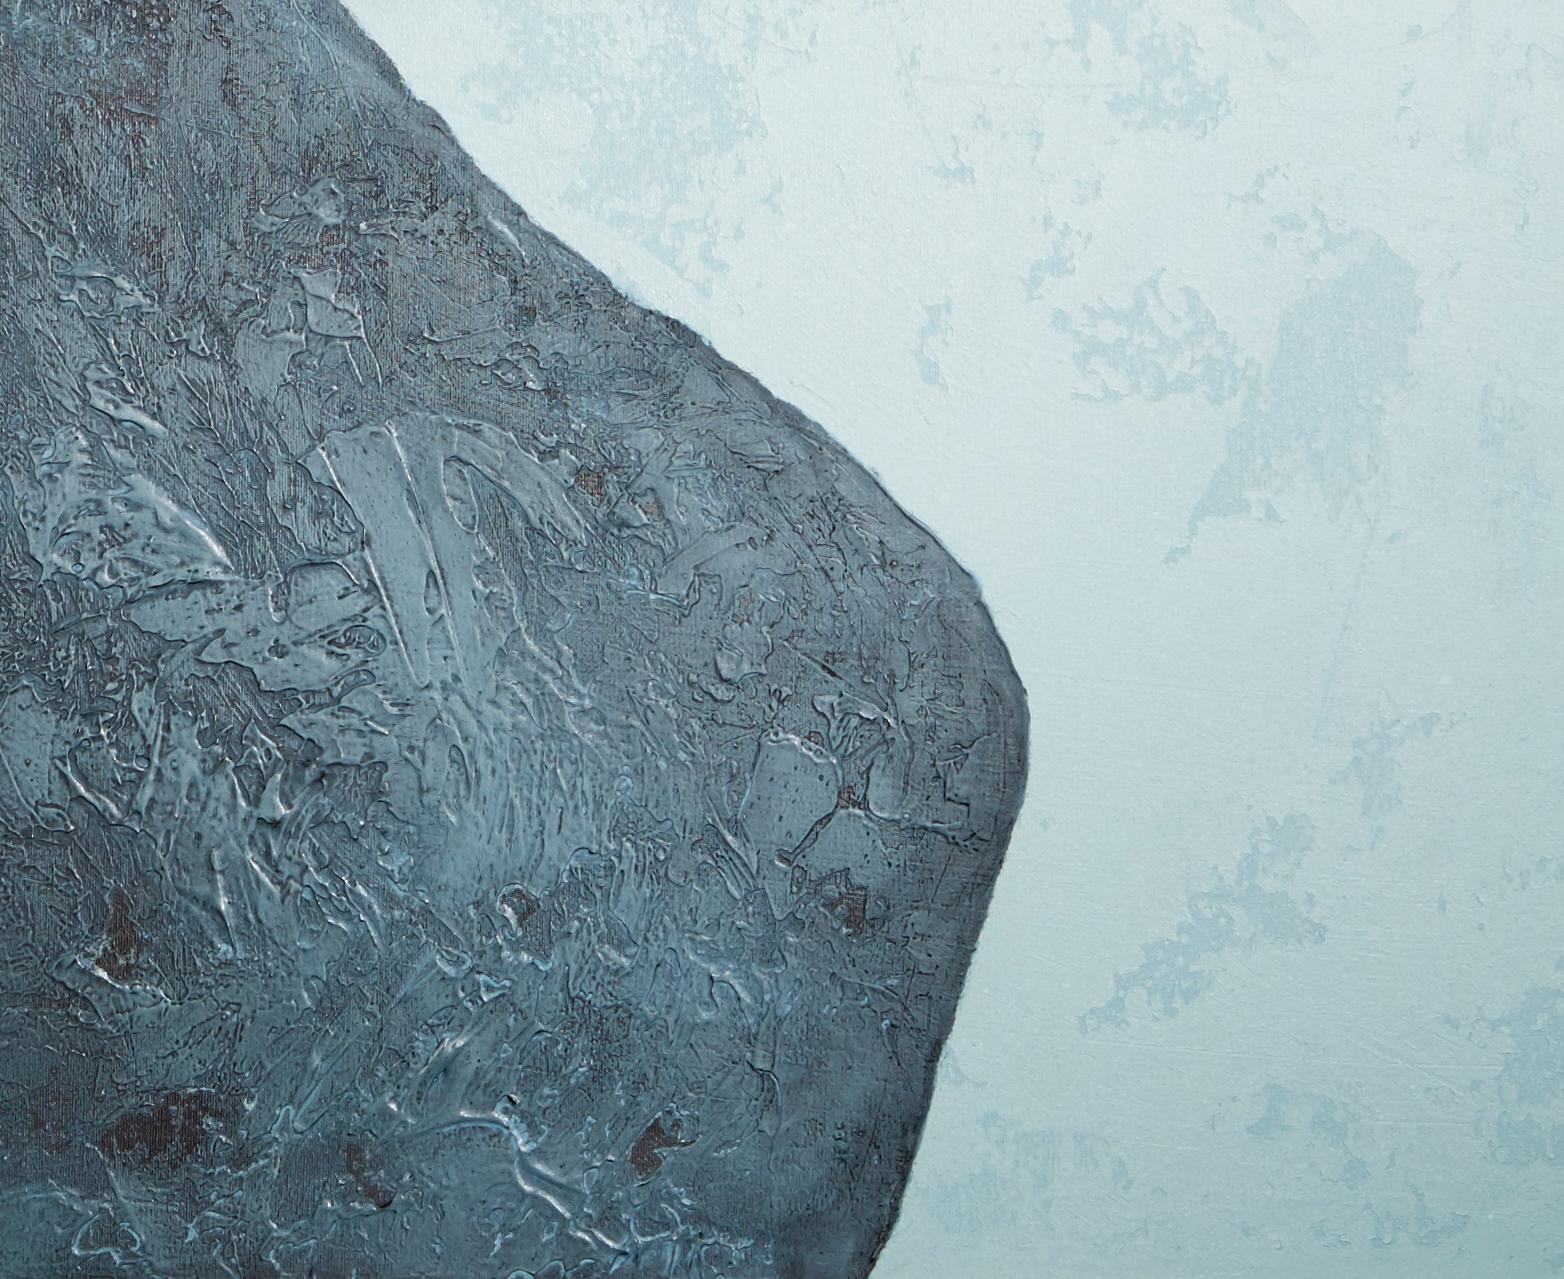 Pierres du XVIIIe siècle - XXIe siècle, contemporain, peinture abstraite, techniques mixtes - Bleu Landscape Painting par Jon Errazu